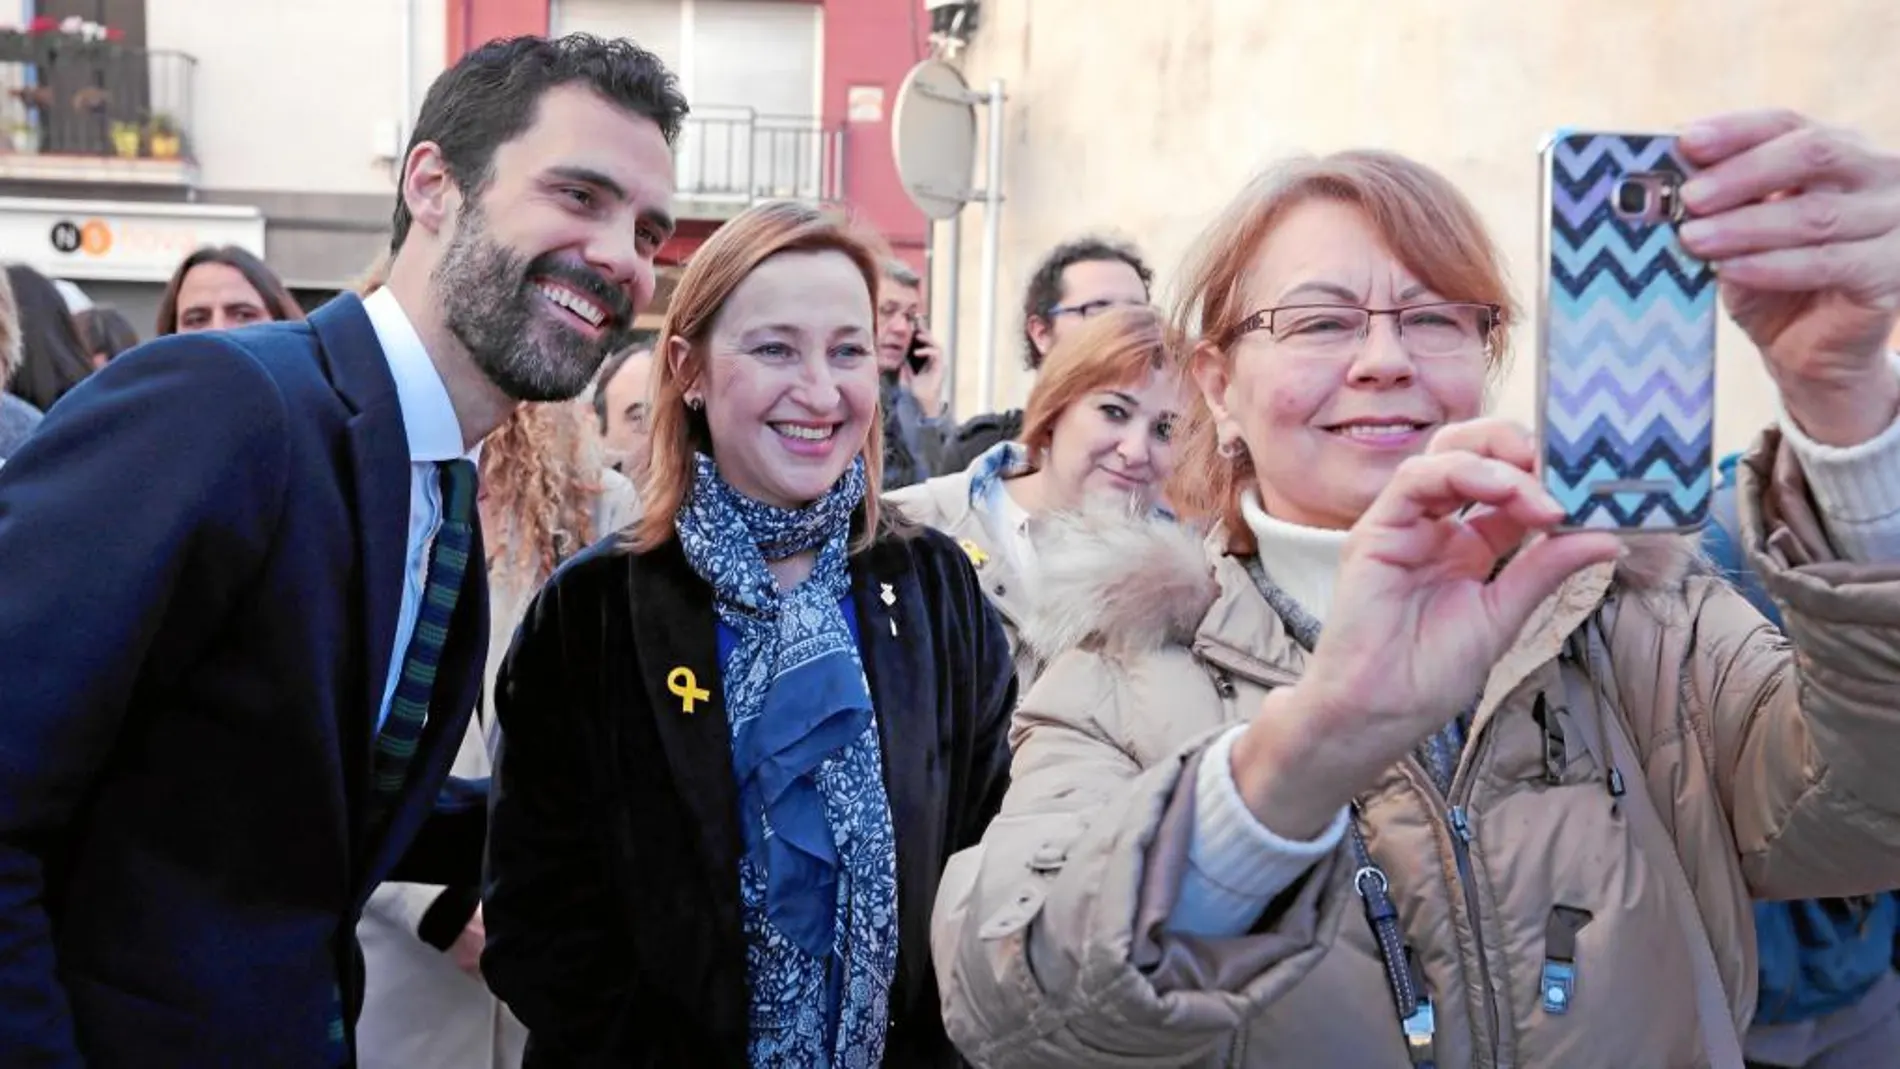 El presidente del Parlament, Roger Torrent, se desplazó ayer hasta Sant Vicenç dels Horts (Barcelona) en su primer acto oficial, donde visitó a la familia de Oriol Junqueras.